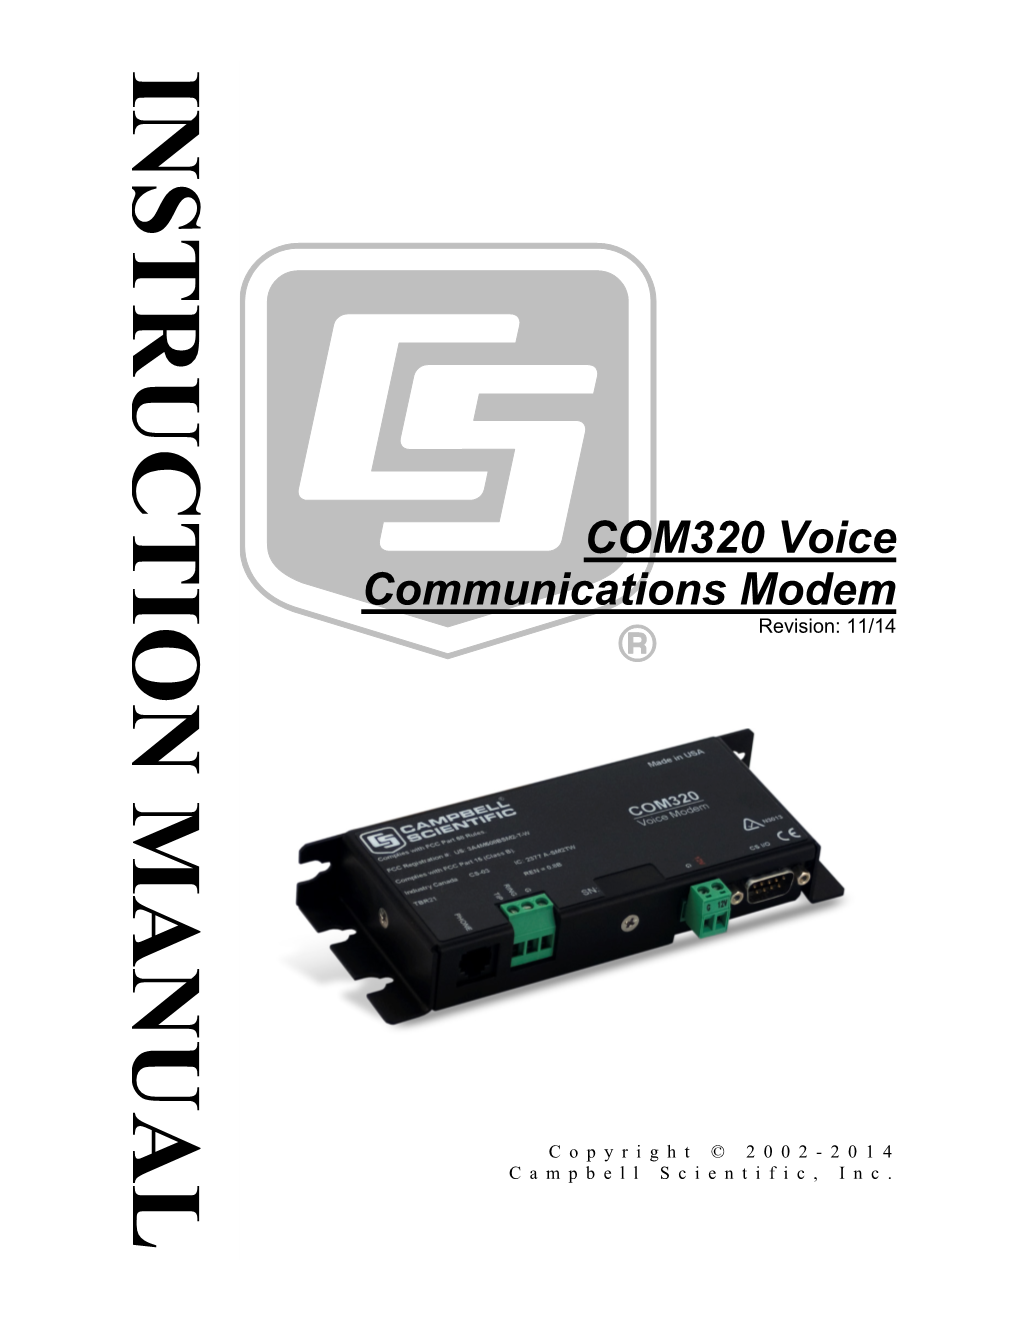 COM320 Voice Communications Modem 1